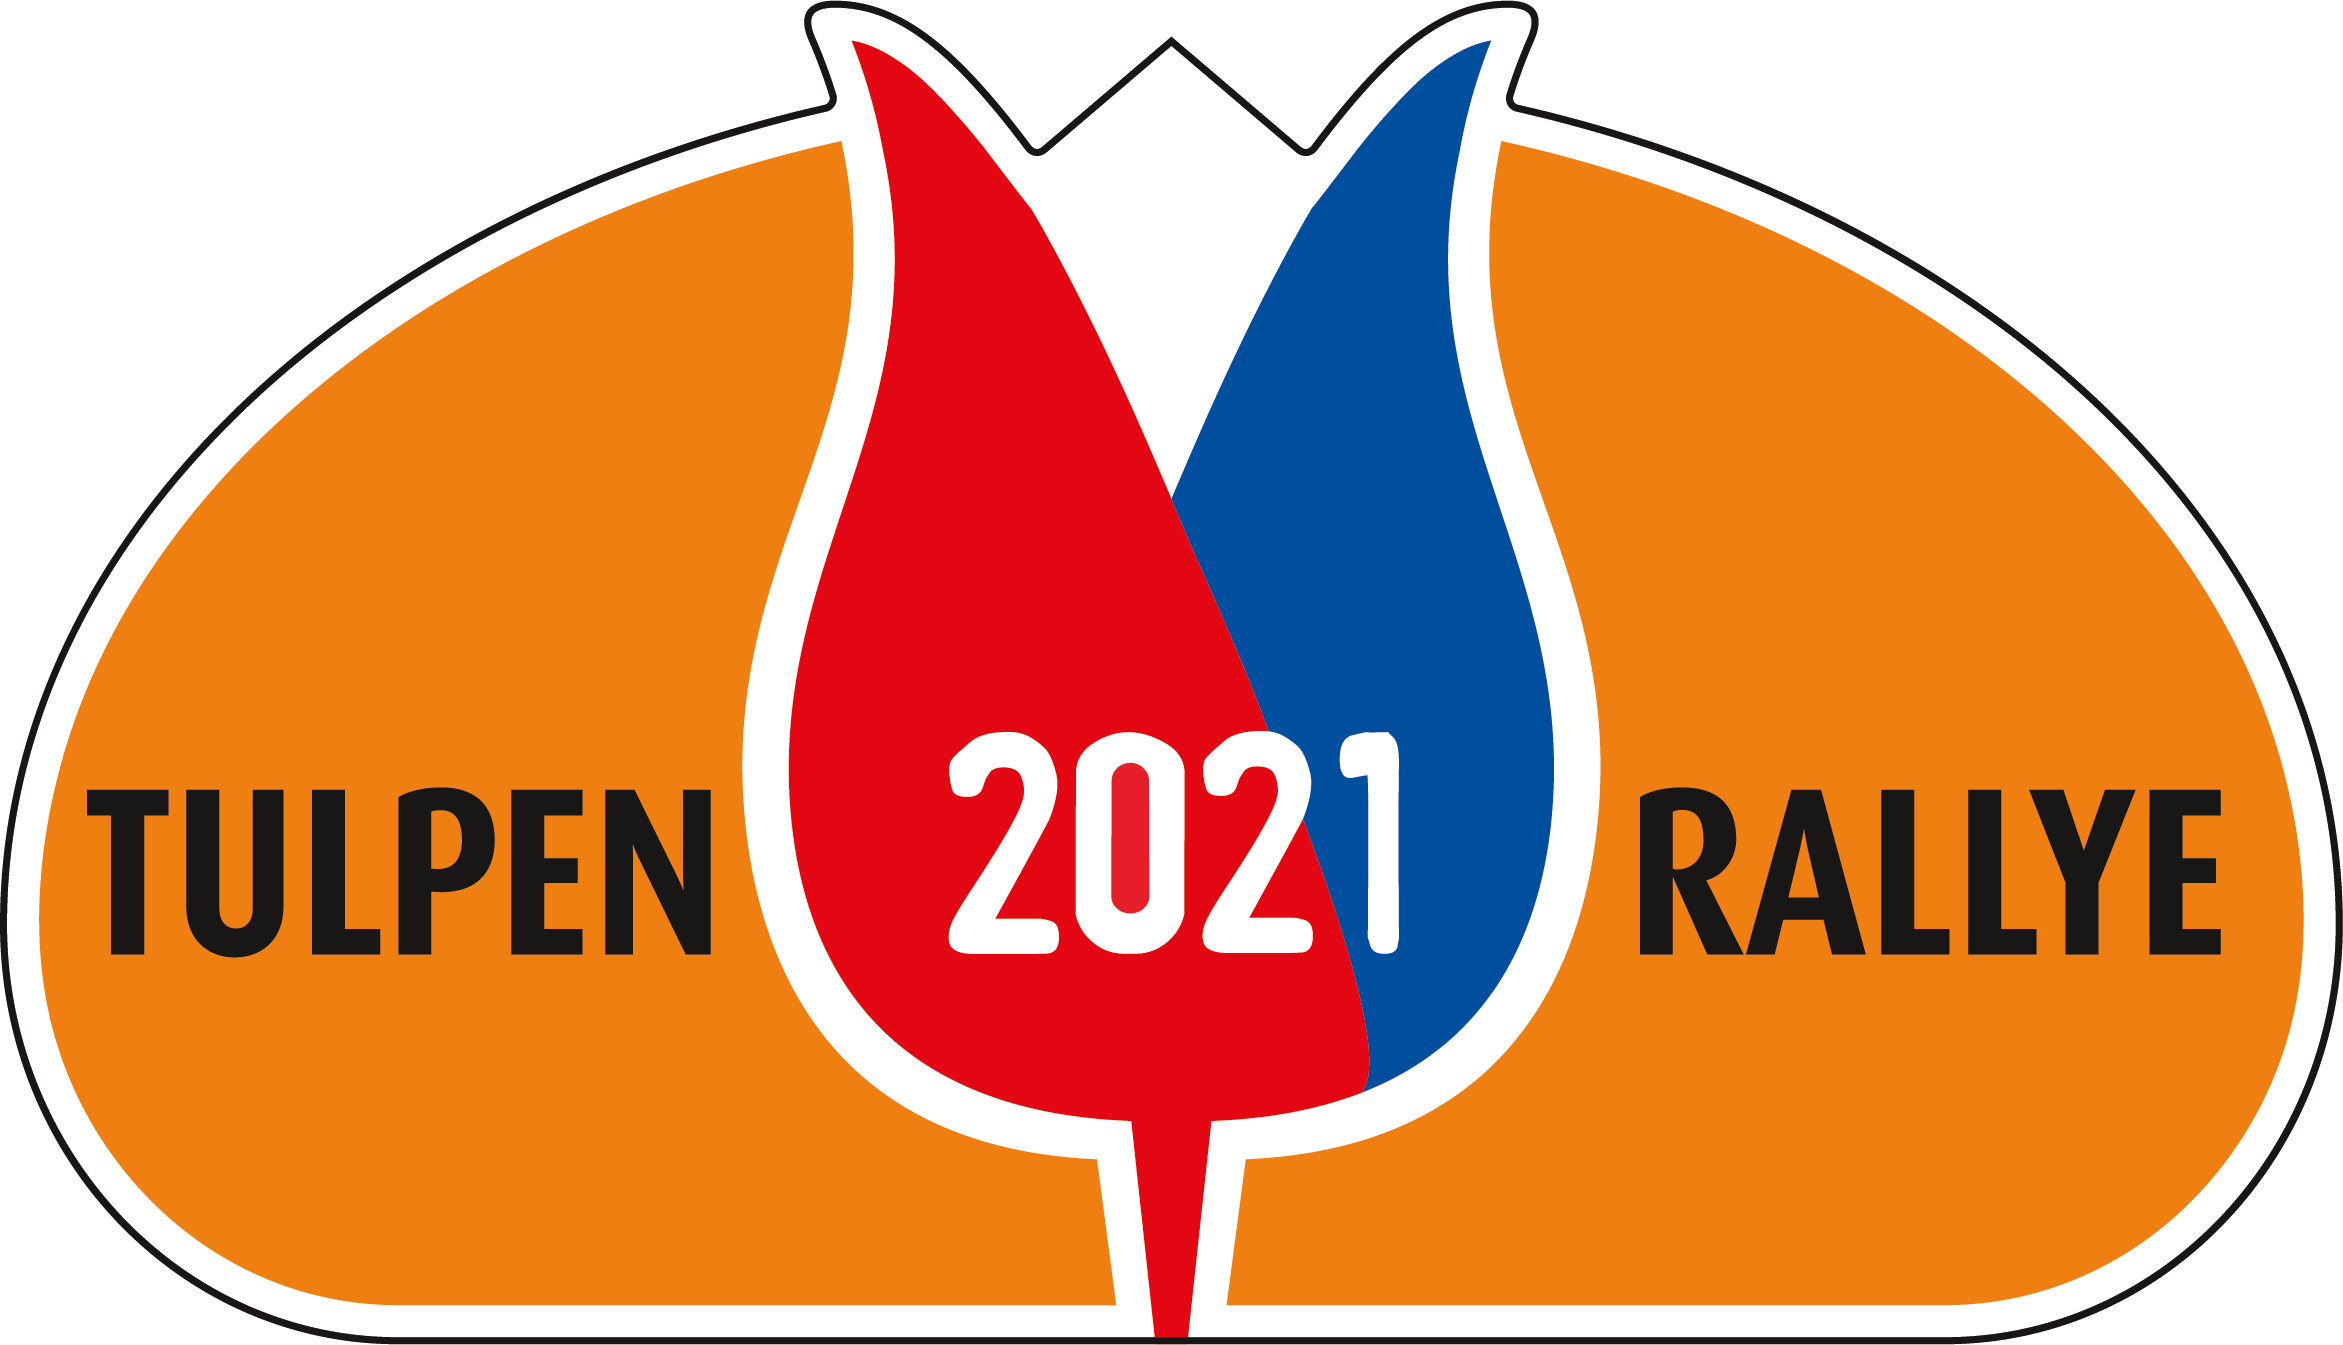 Tulpenrally 2021 logo